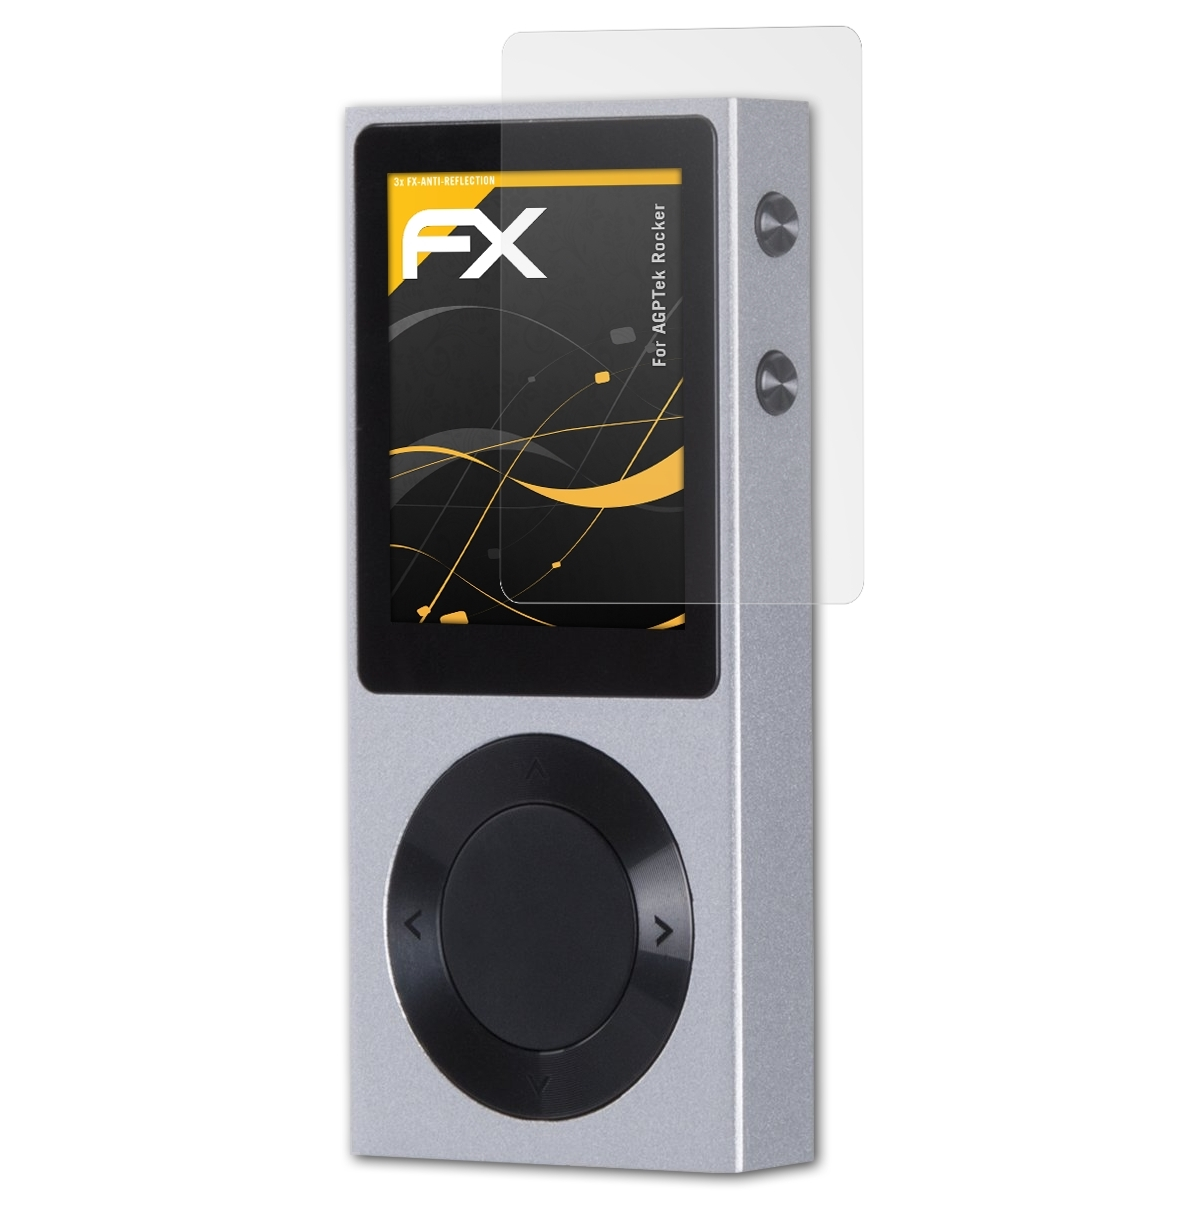 FX-Antireflex Displayschutz(für Rocker) ATFOLIX 3x AGPTek